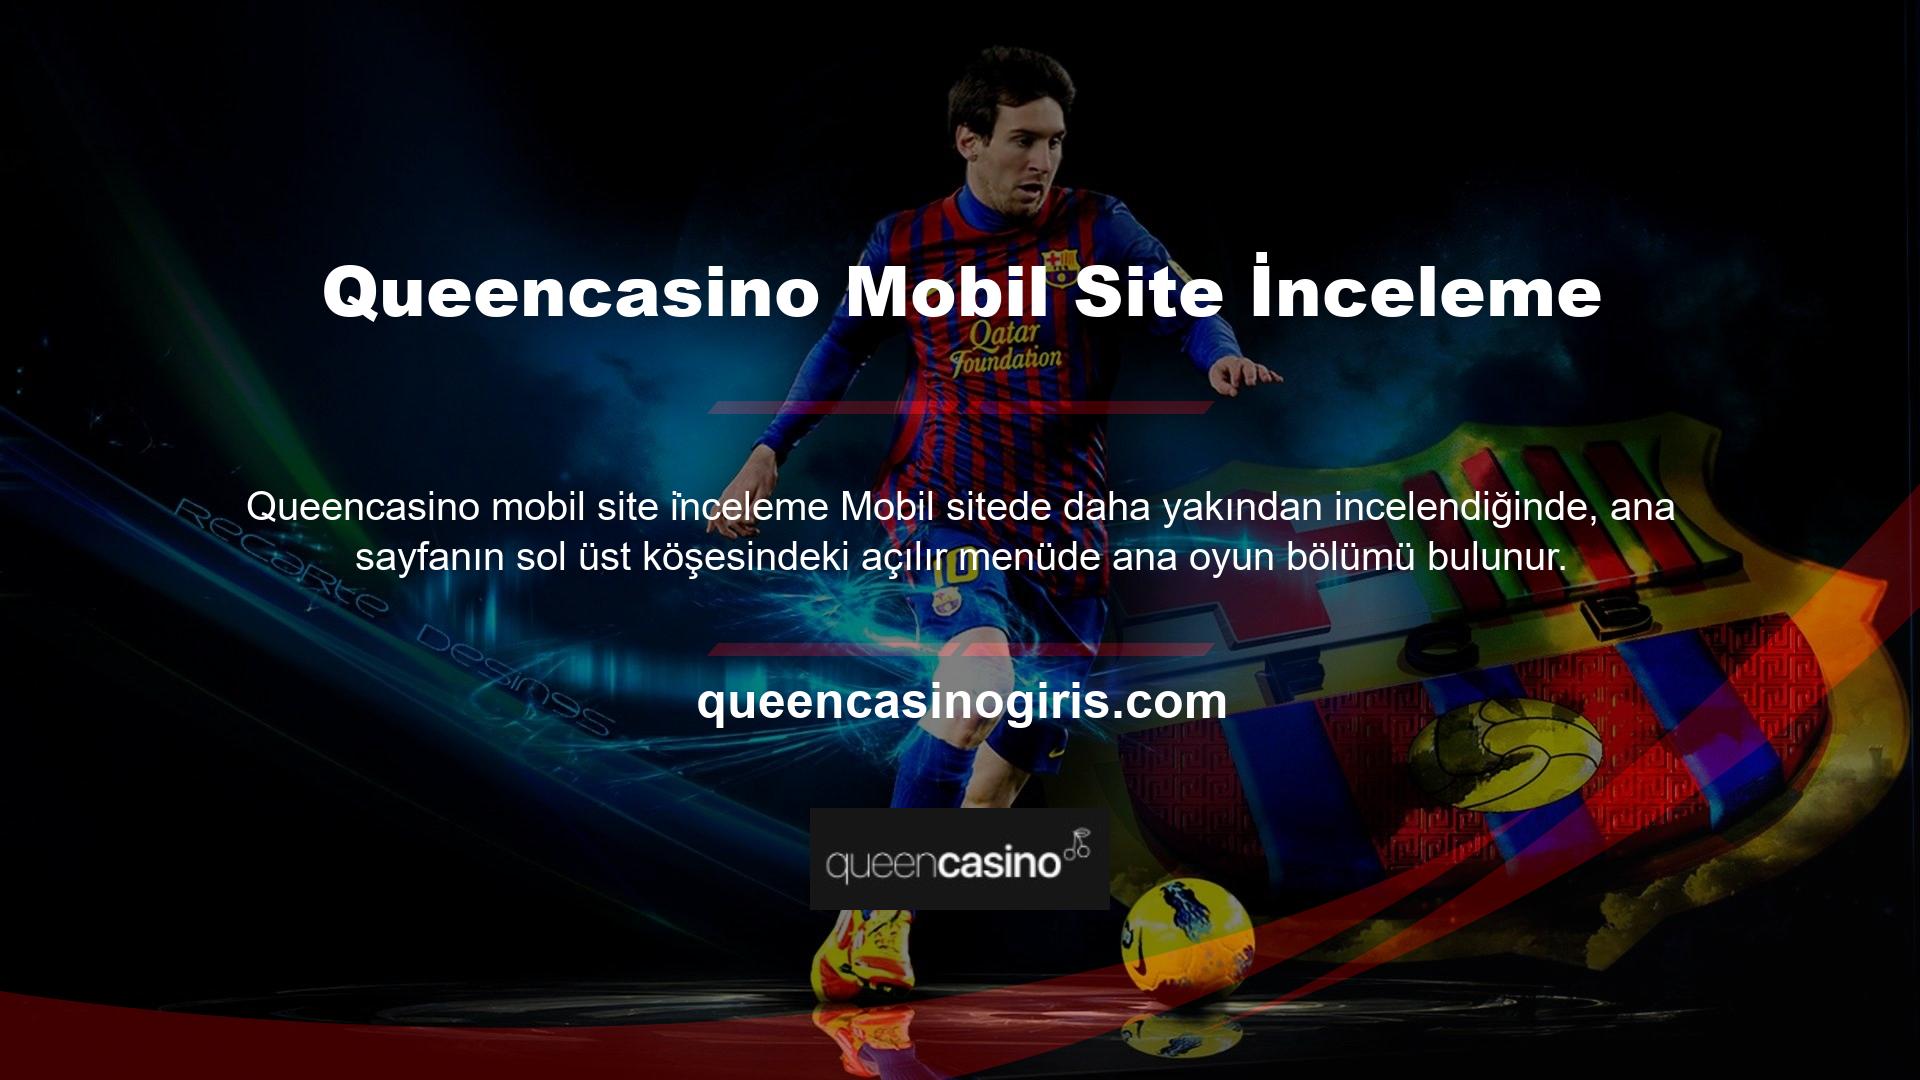 Queencasino mobil ana sayfasının sağ üst köşesinde Quick Match arama paneli bulunmakta olup Türkçe, İngilizce, Almanca ve Fransızca dillerini desteklemektedir